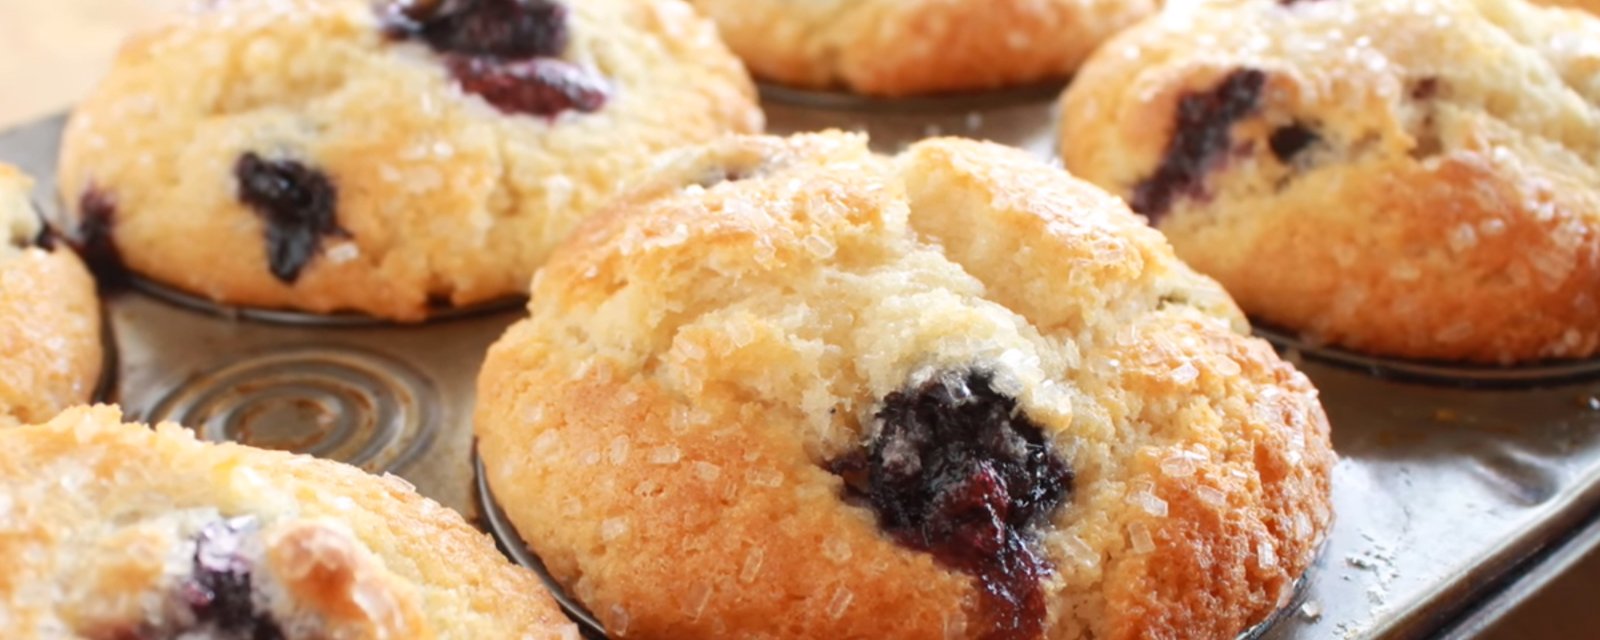 La meilleure recette de base de pâte à muffin, une recette sensationnelle et parfaite!